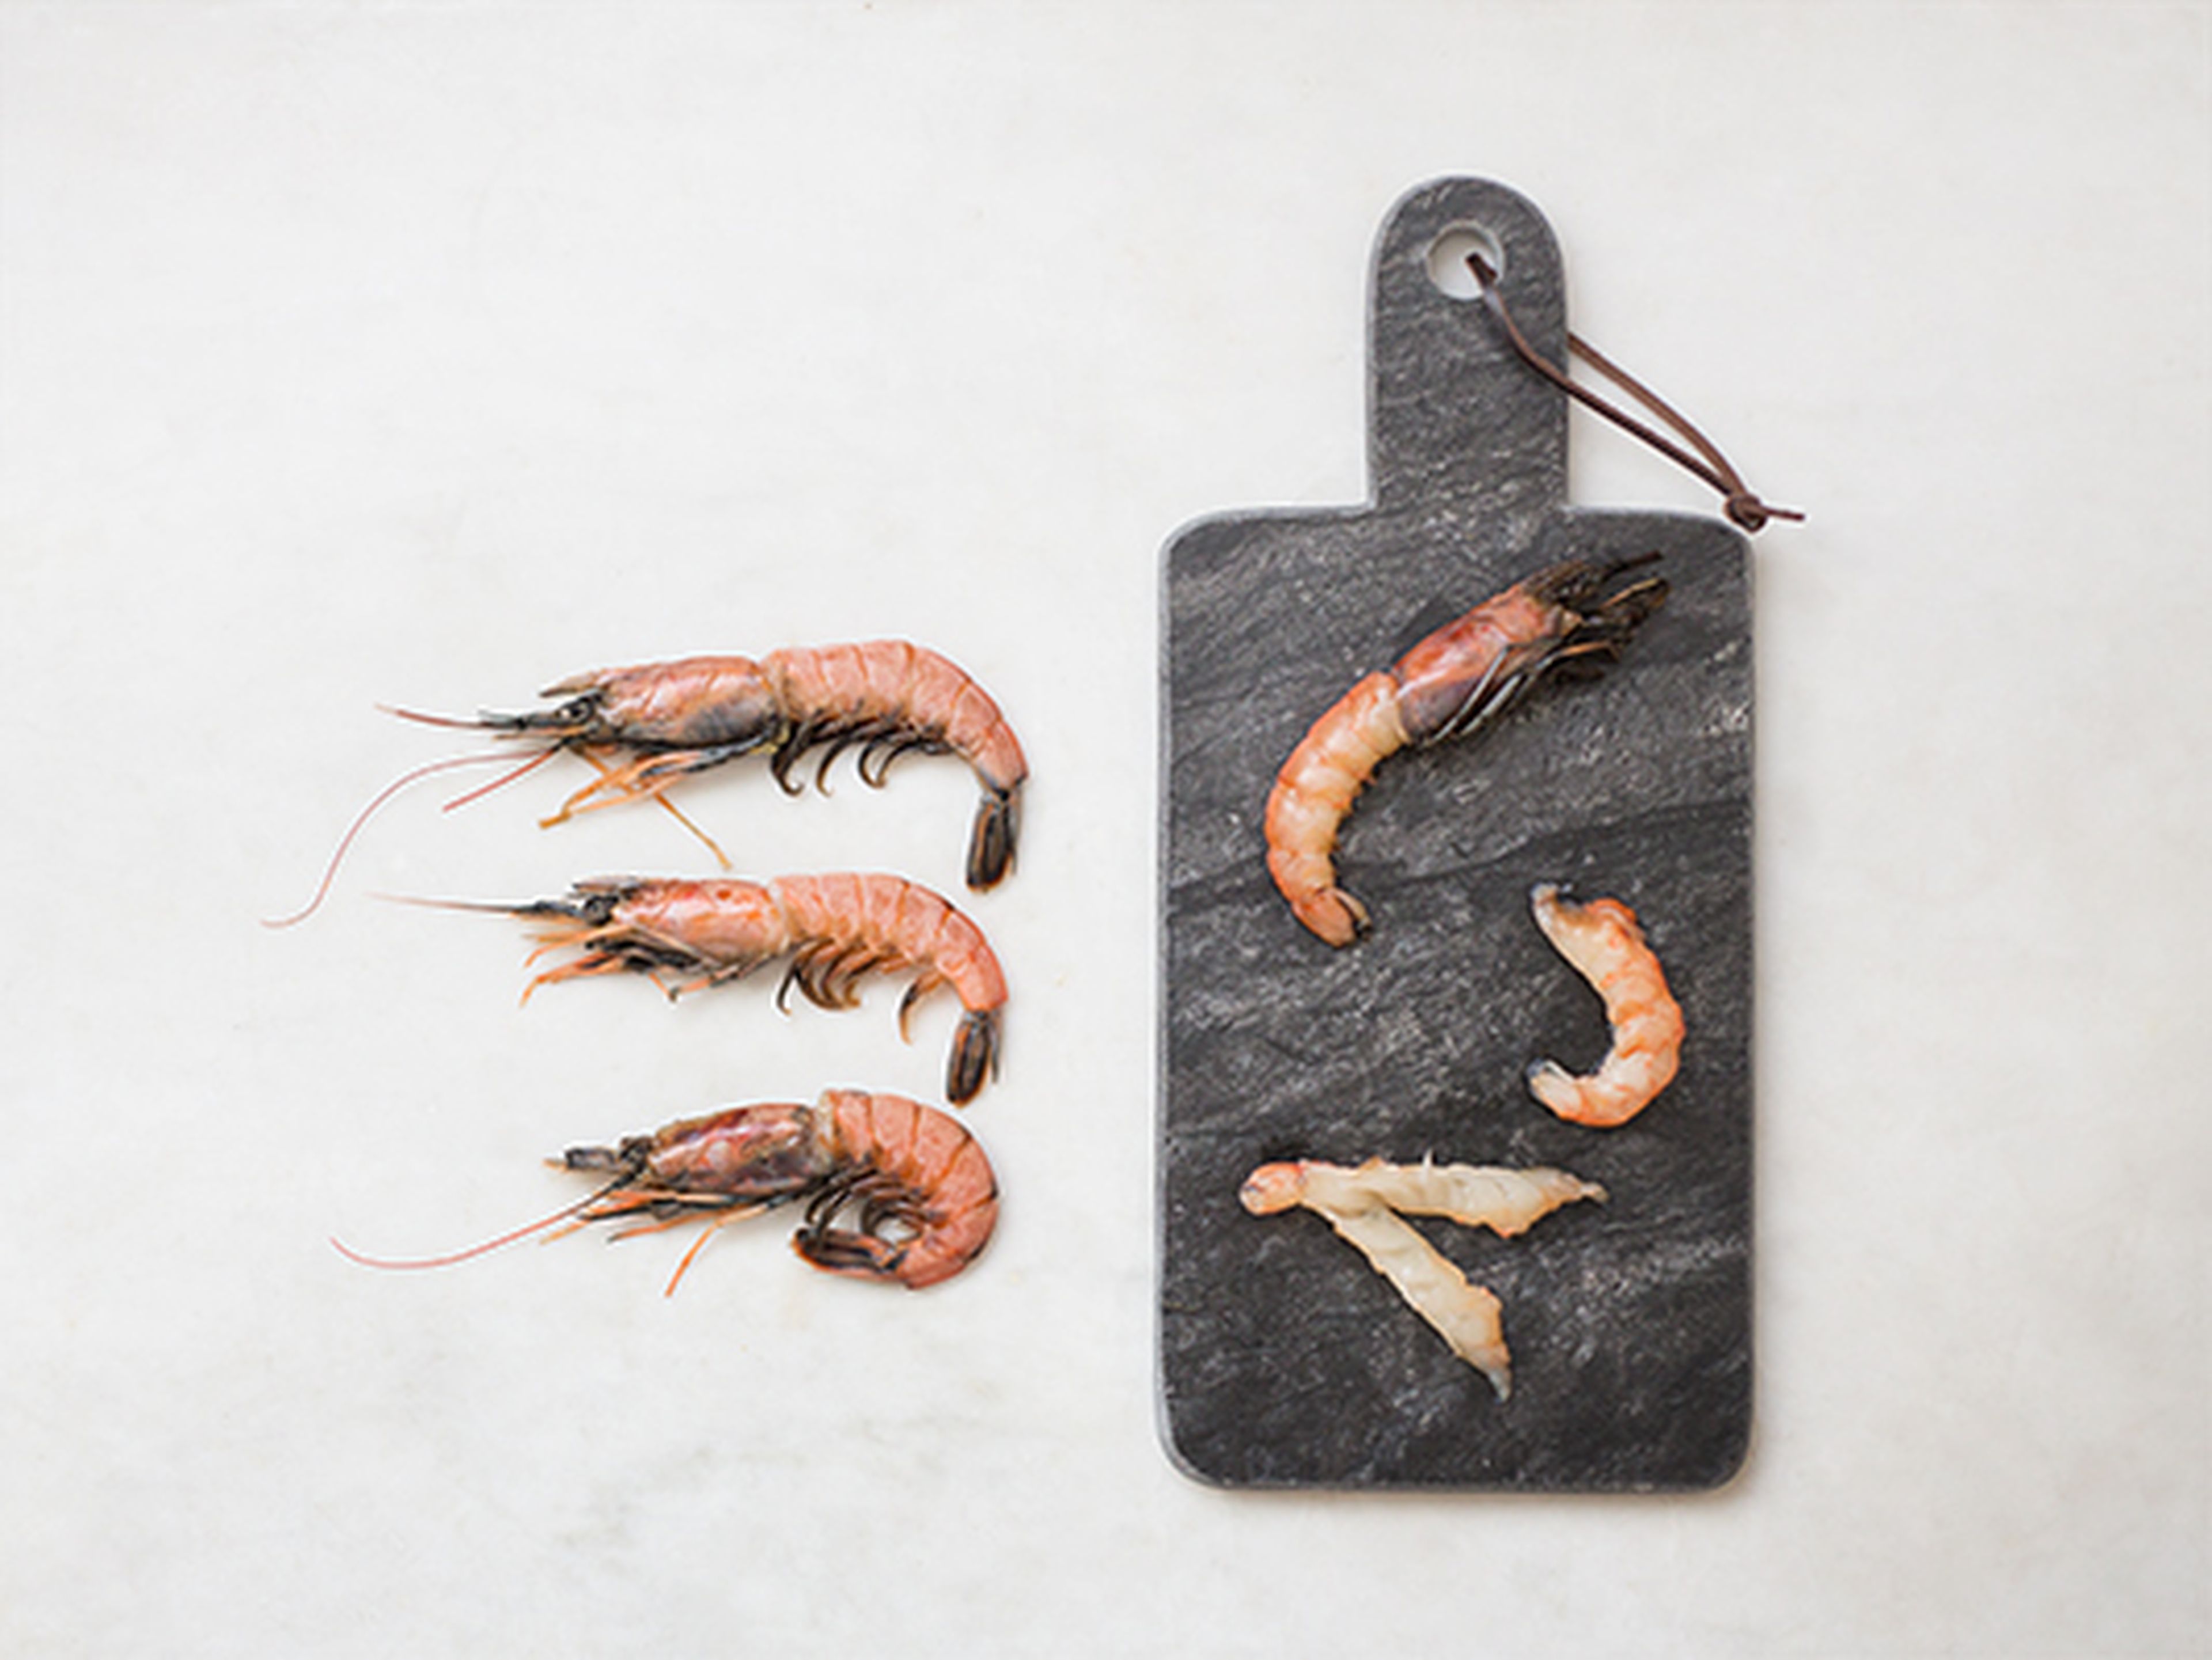 How to prepare shrimp